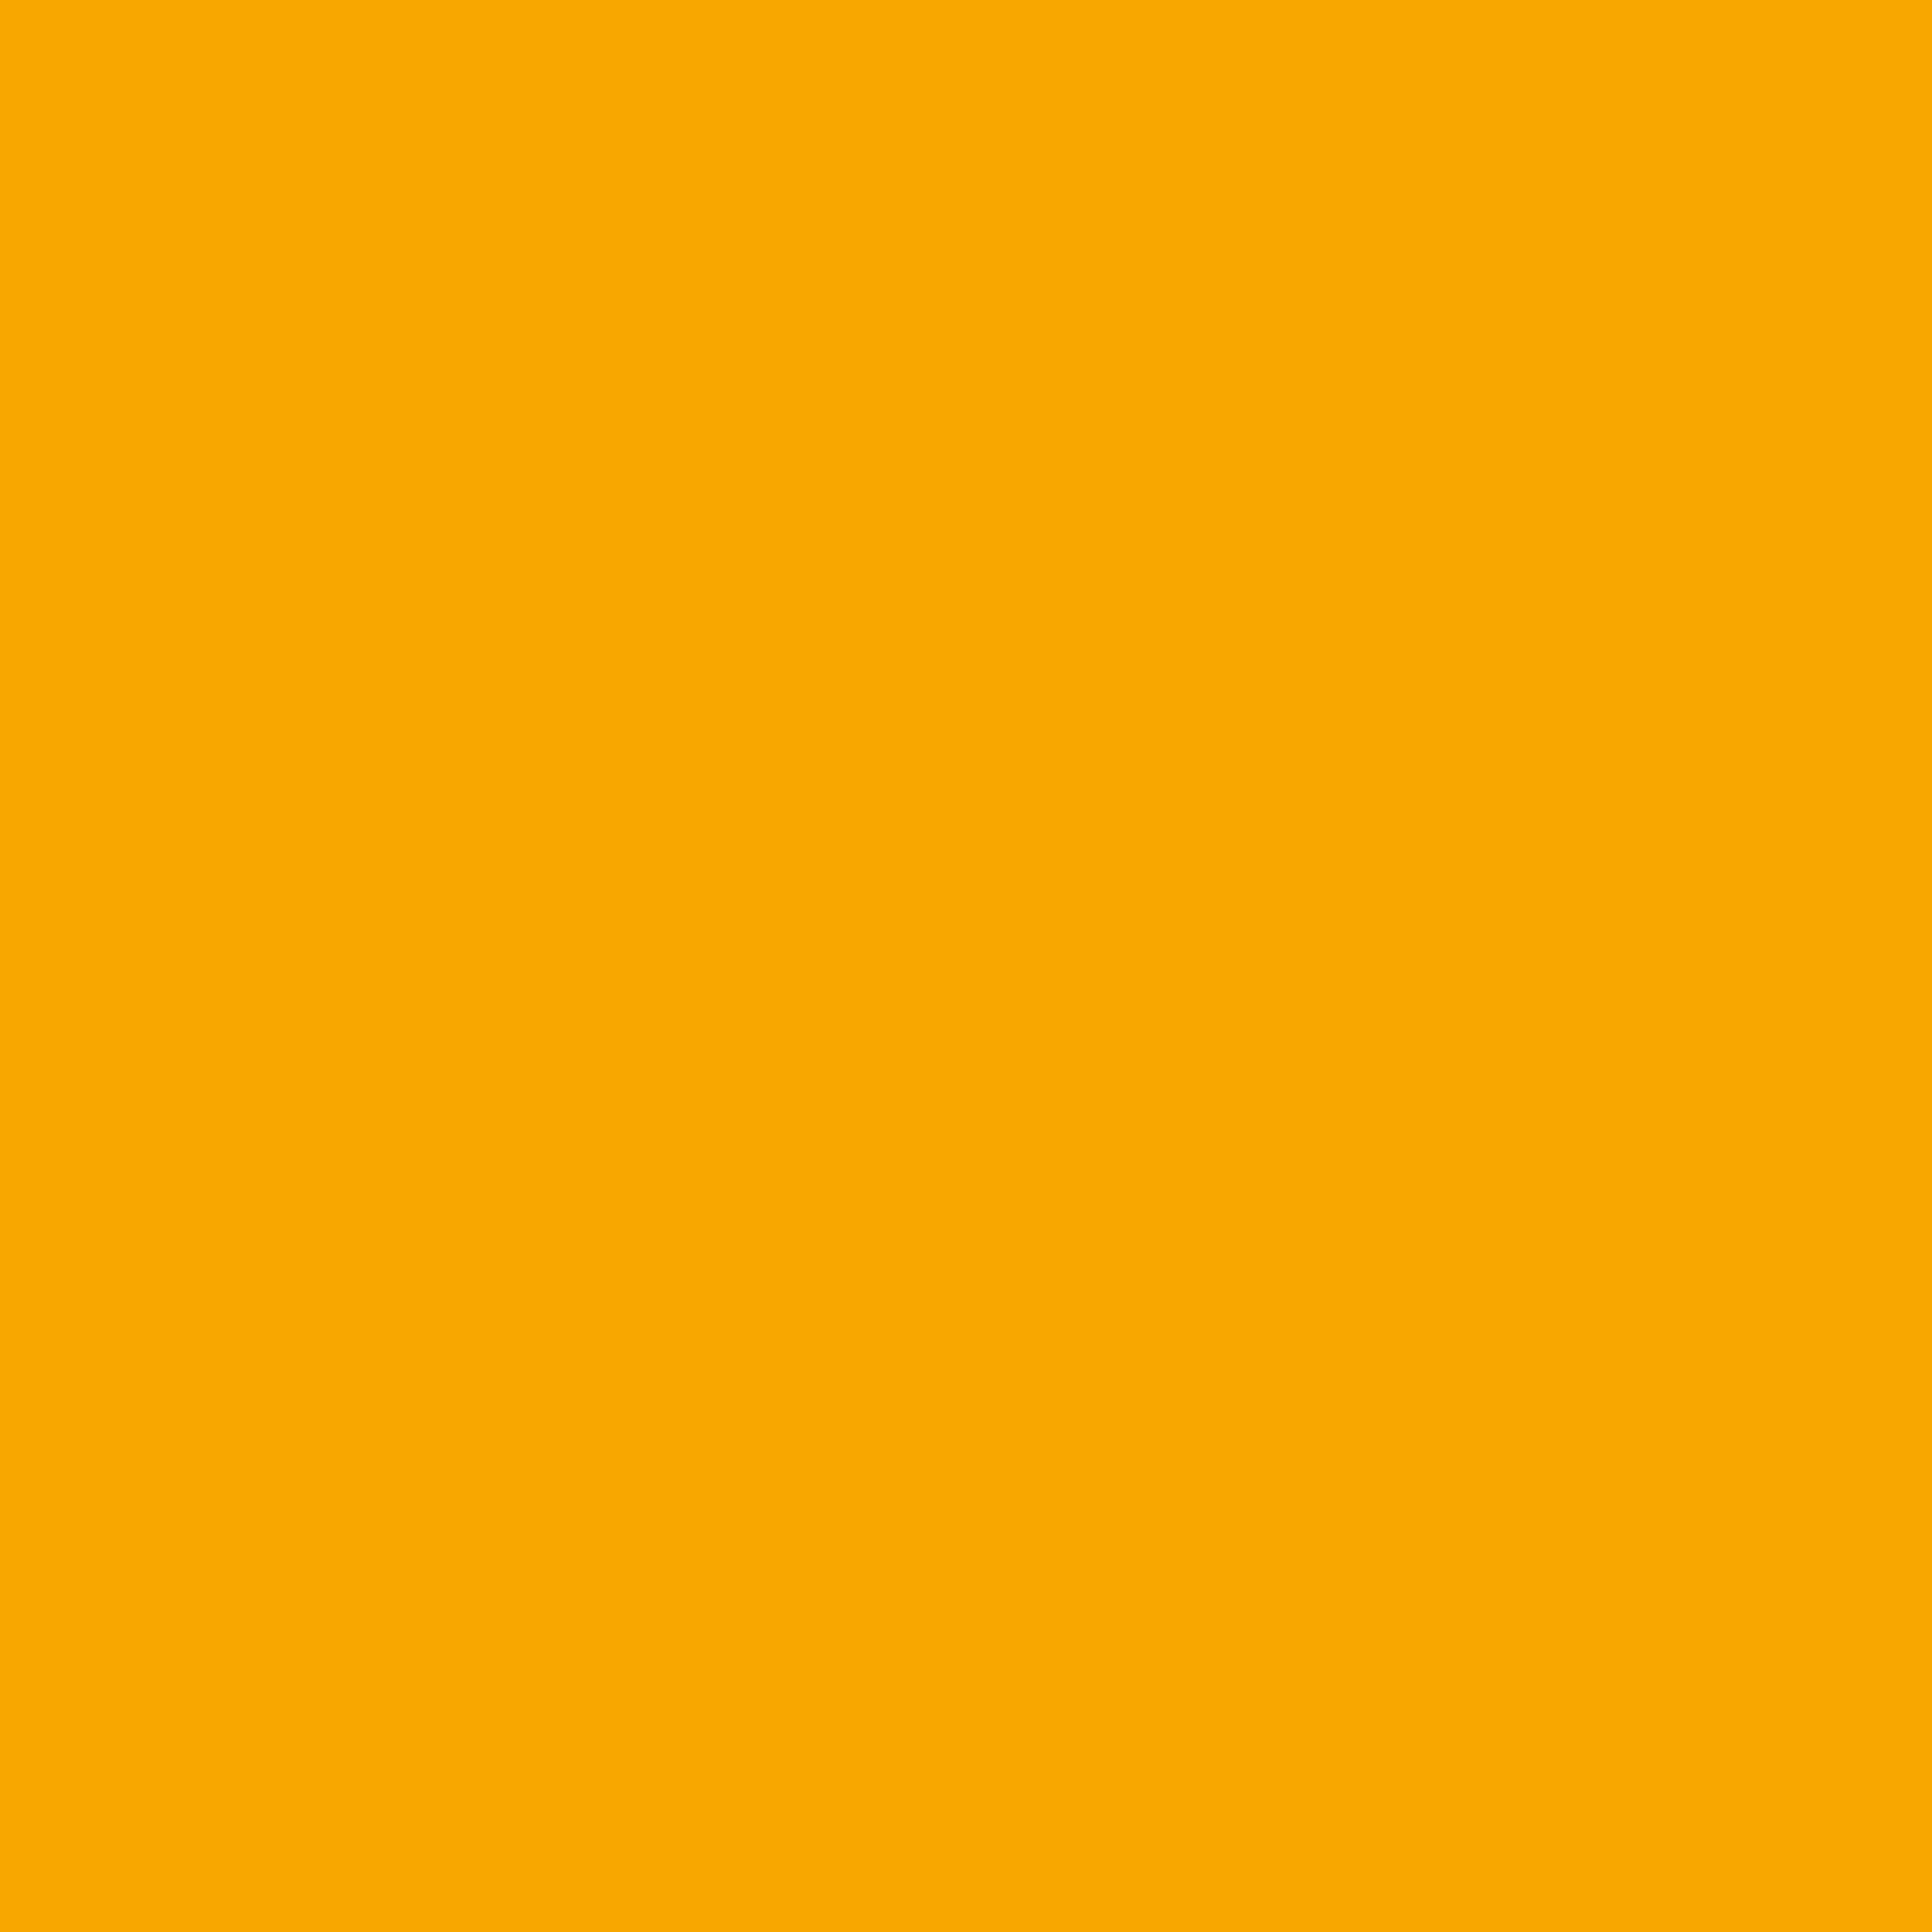 2in1 Buntlack 'Sonnenblume' orangegelb glänzend 750 ml + product picture